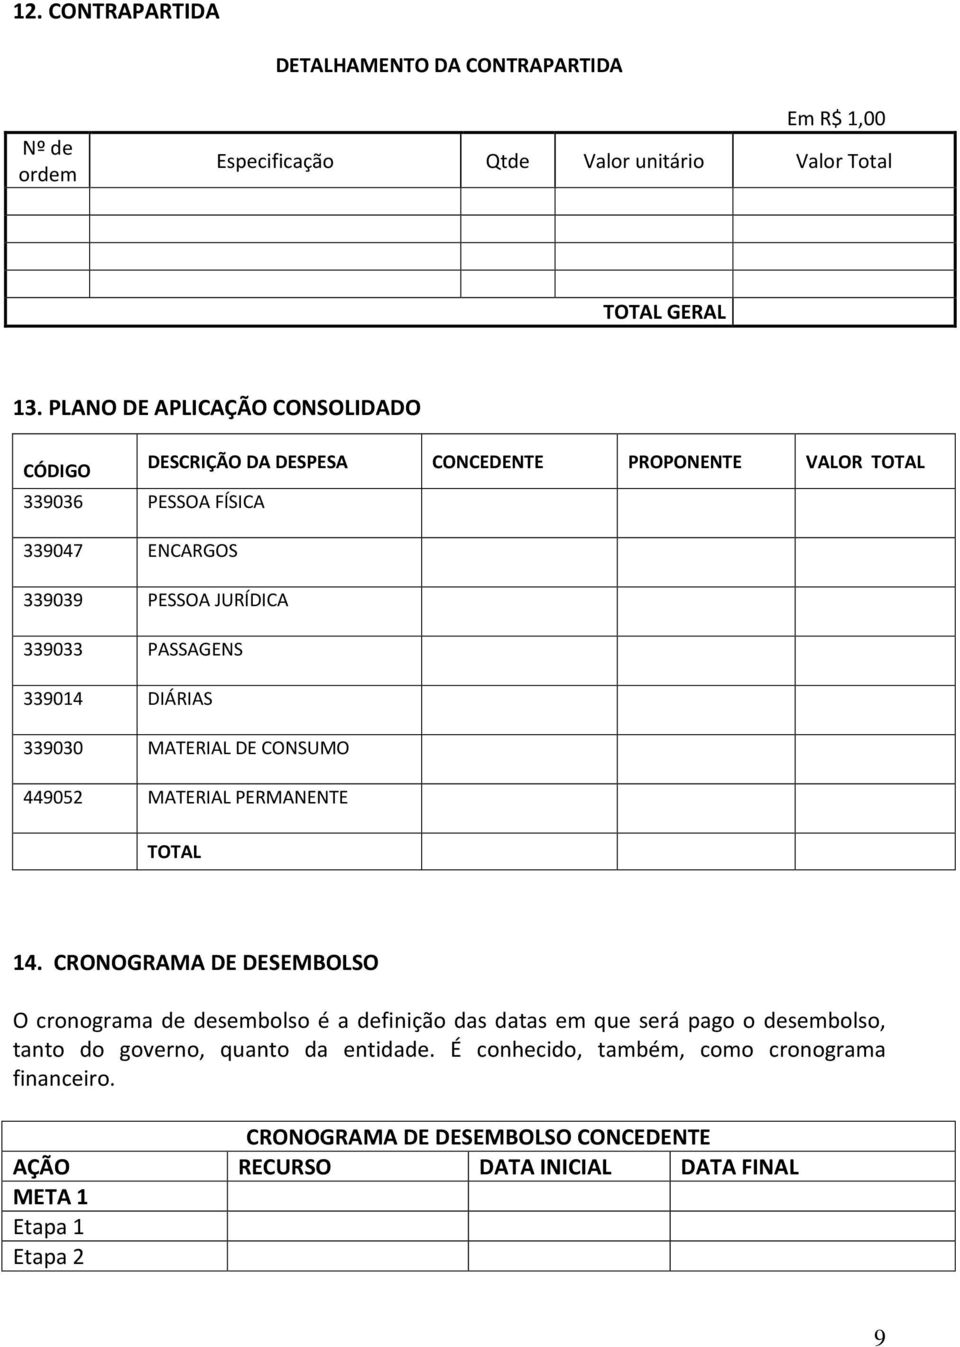 PASSAGENS 33904 DIÁRIAS 339030 MATERIAL DE CONSUMO 449052 MATERIAL PERMANENTE 4.